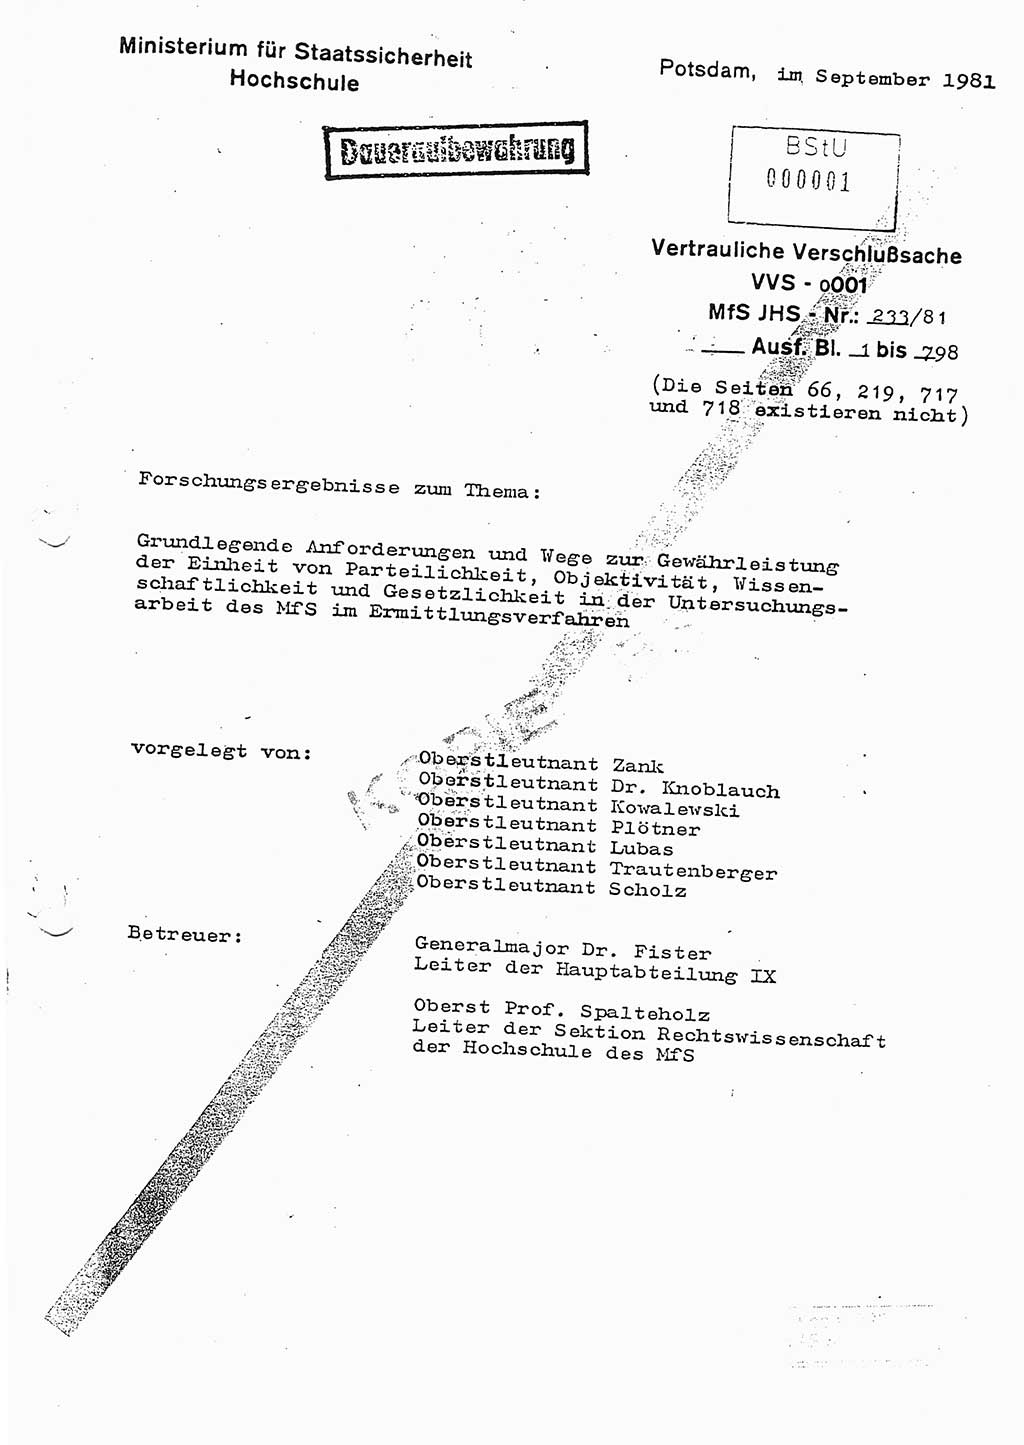 Dissertation Oberstleutnant Horst Zank (JHS), Oberstleutnant Dr. Karl-Heinz Knoblauch (JHS), Oberstleutnant Gustav-Adolf Kowalewski (HA Ⅸ), Oberstleutnant Wolfgang Plötner (HA Ⅸ), Ministerium für Staatssicherheit (MfS) [Deutsche Demokratische Republik (DDR)], Juristische Hochschule (JHS), Vertrauliche Verschlußsache (VVS) o001-233/81, Potsdam 1981, Blatt 1 (Diss. MfS DDR JHS VVS o001-233/81 1981, Bl. 1)